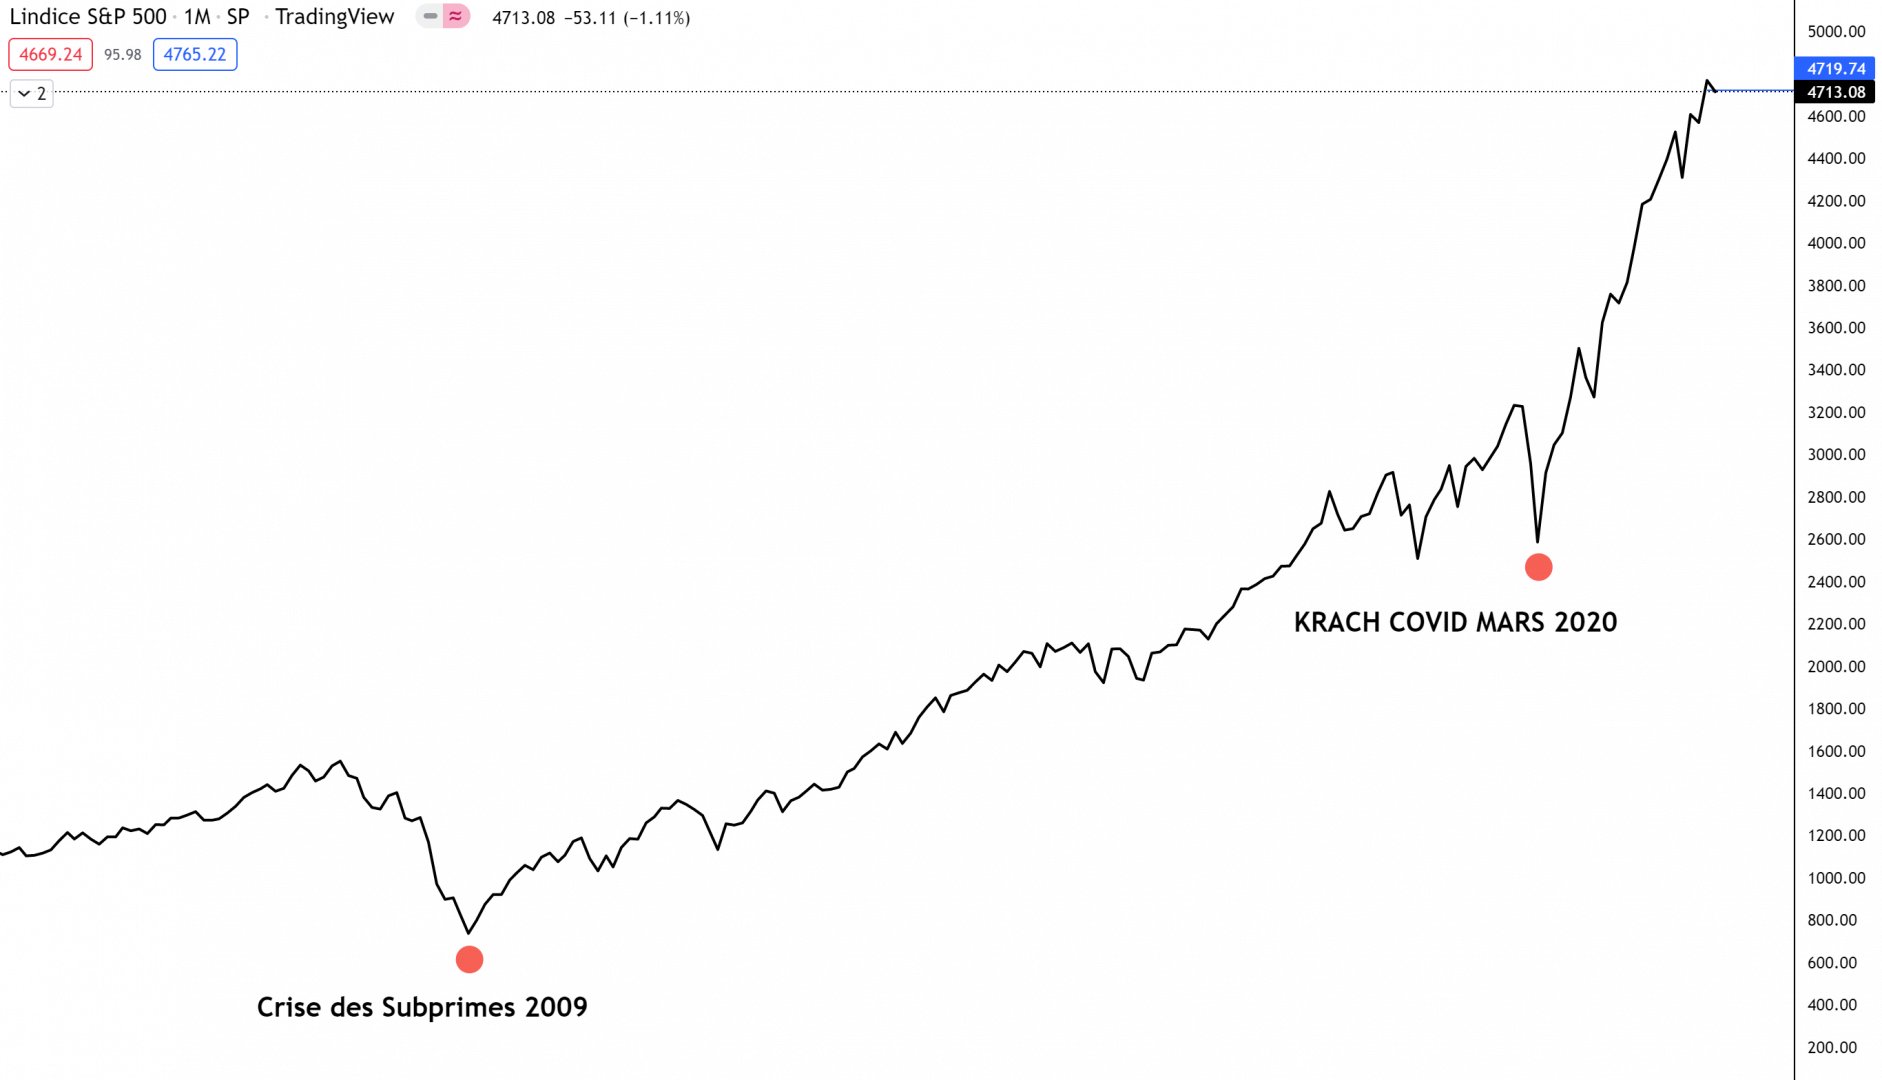 Indice S&P500 1 mois krach subprimes 2009 covid-19 2020